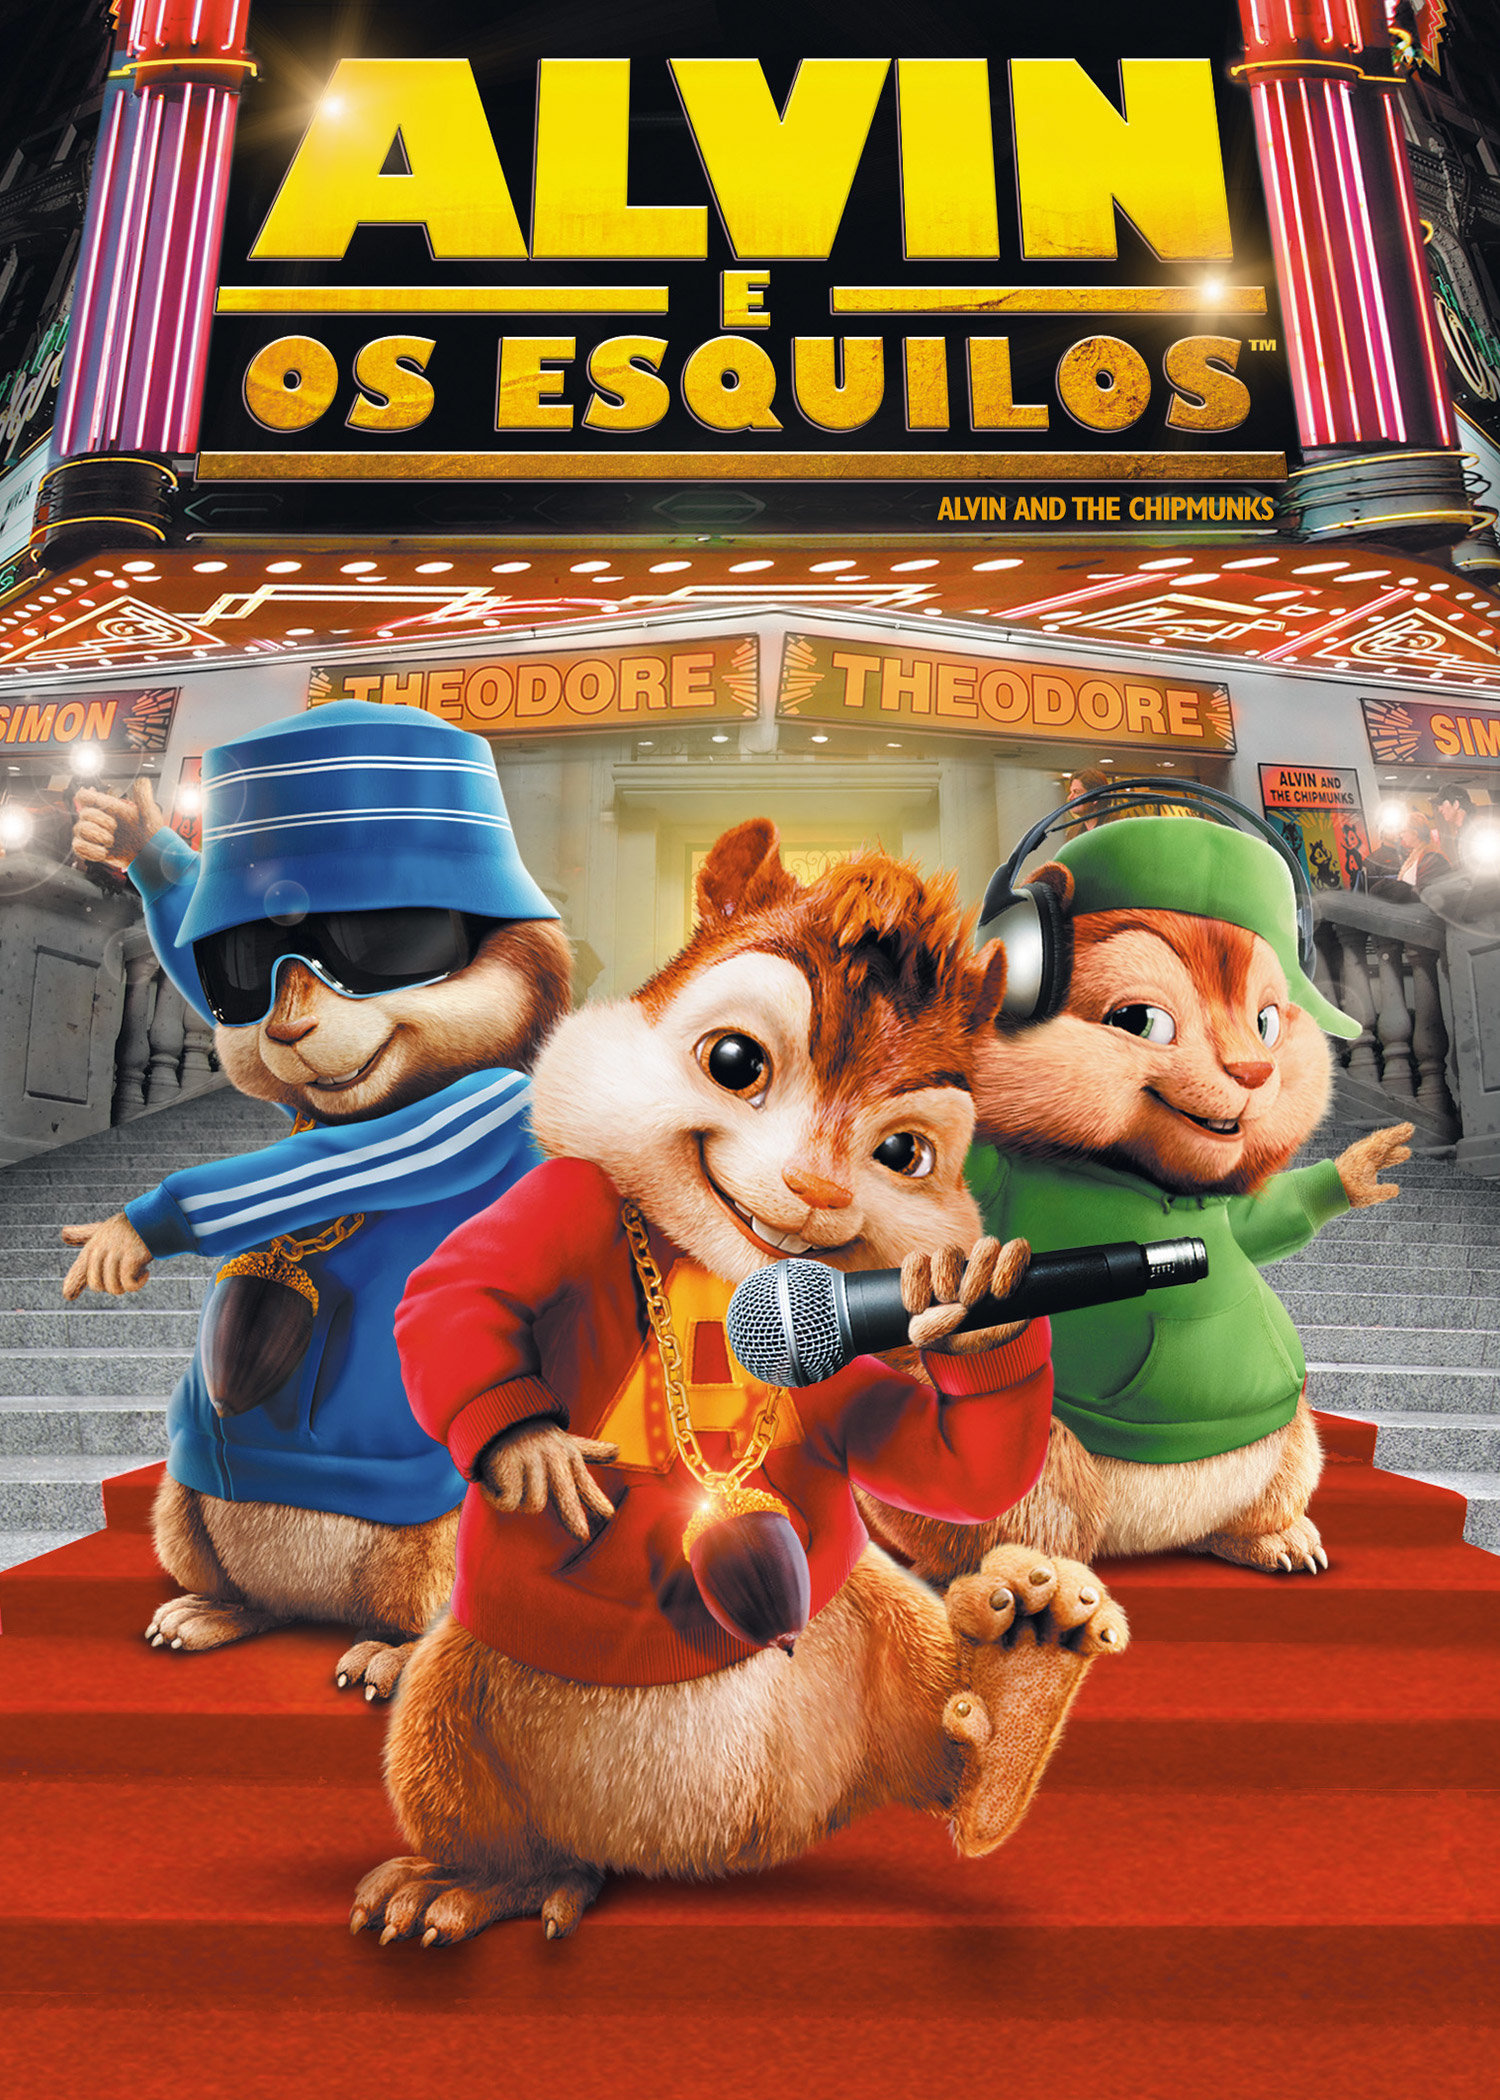 Alvin e os esquilos é um personagem de desenho animado do filme de animação  alvin e os esquilos.